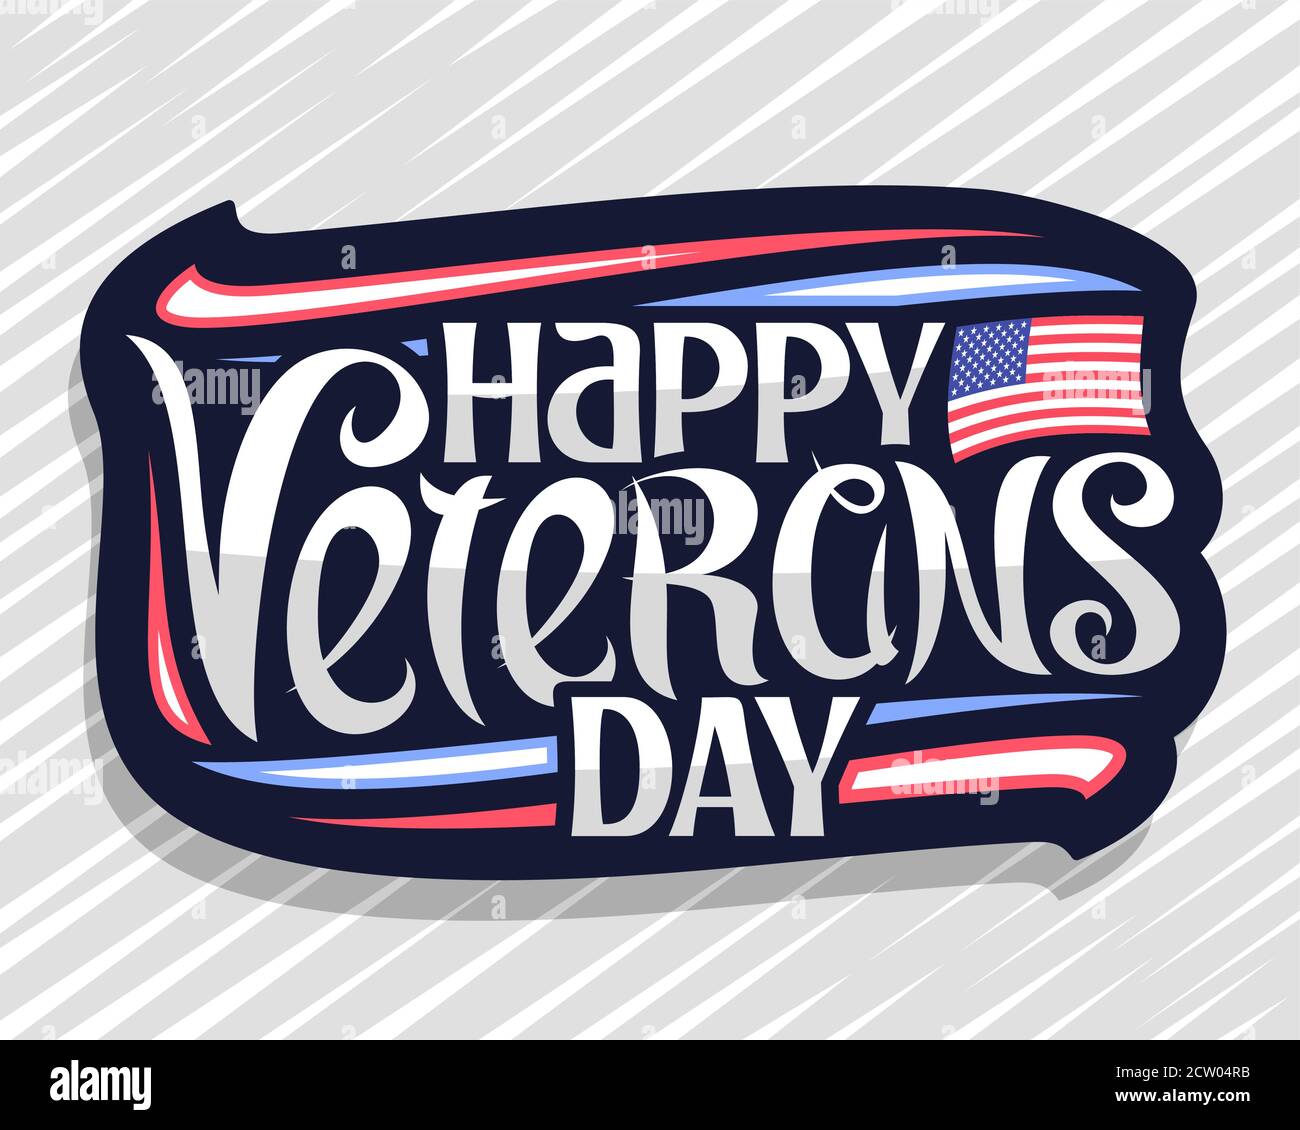 Vektor-Logo für Veterans Day, dunkles Abzeichen mit Darstellung der nationalen rot und blau gestreiften Flagge der USA, dekorative Schnörkel und Sterne, einzigartige lette Stock Vektor